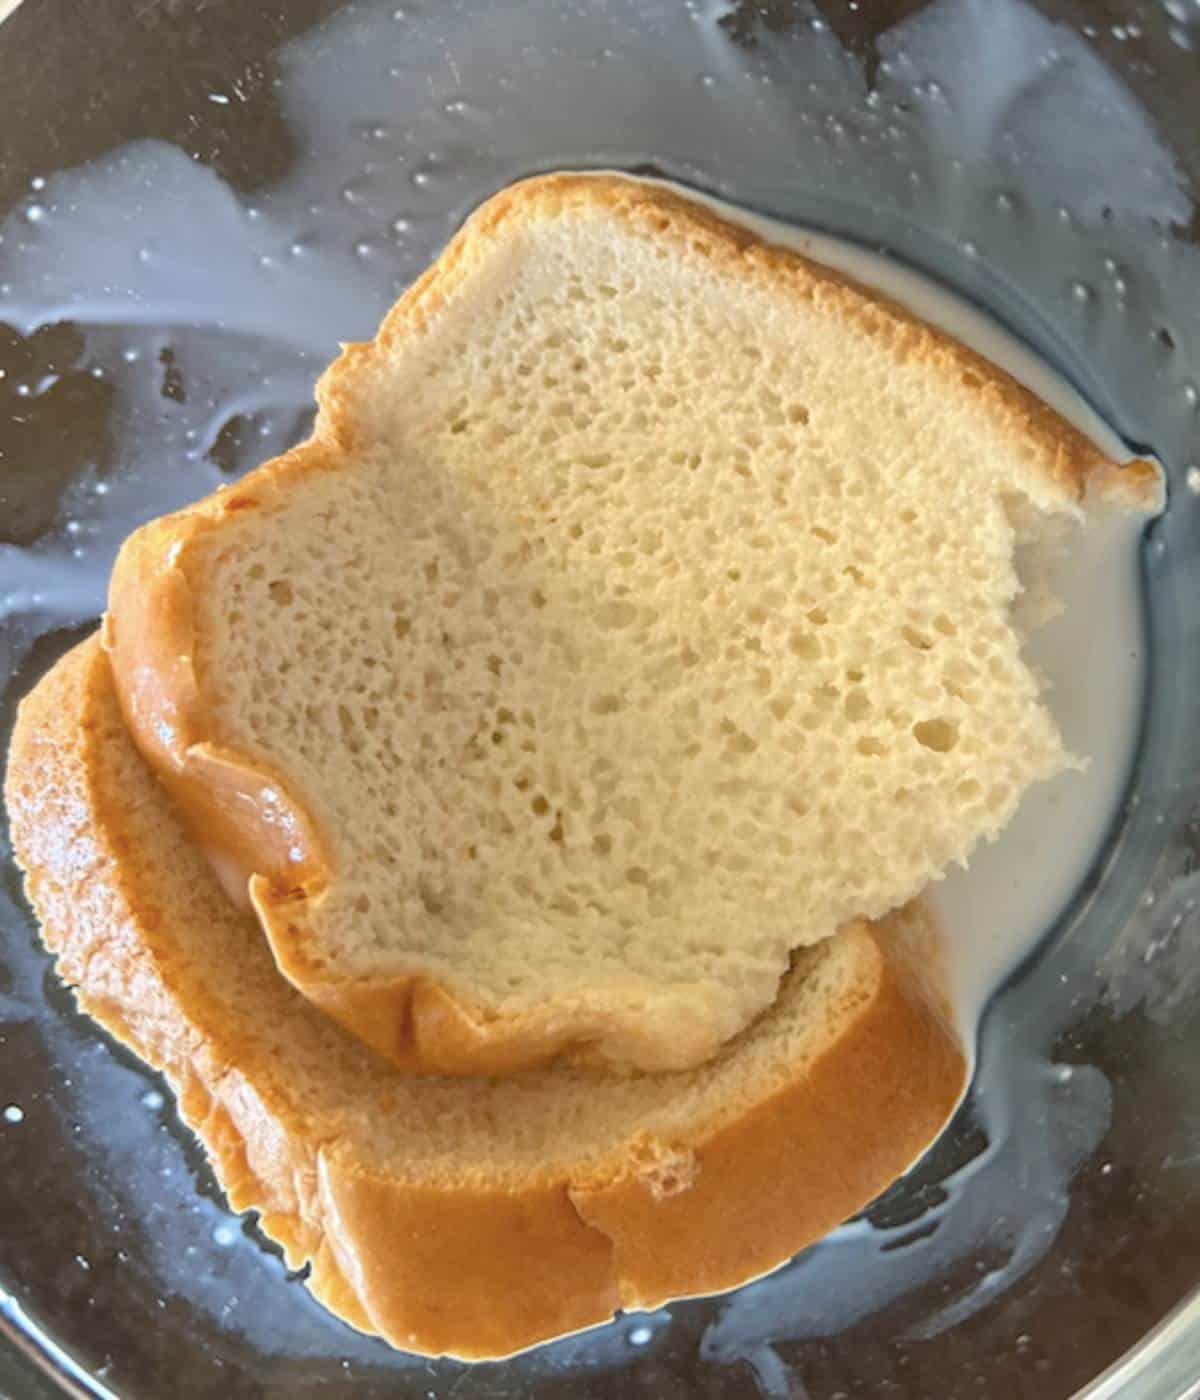 Bread soaking in milk.